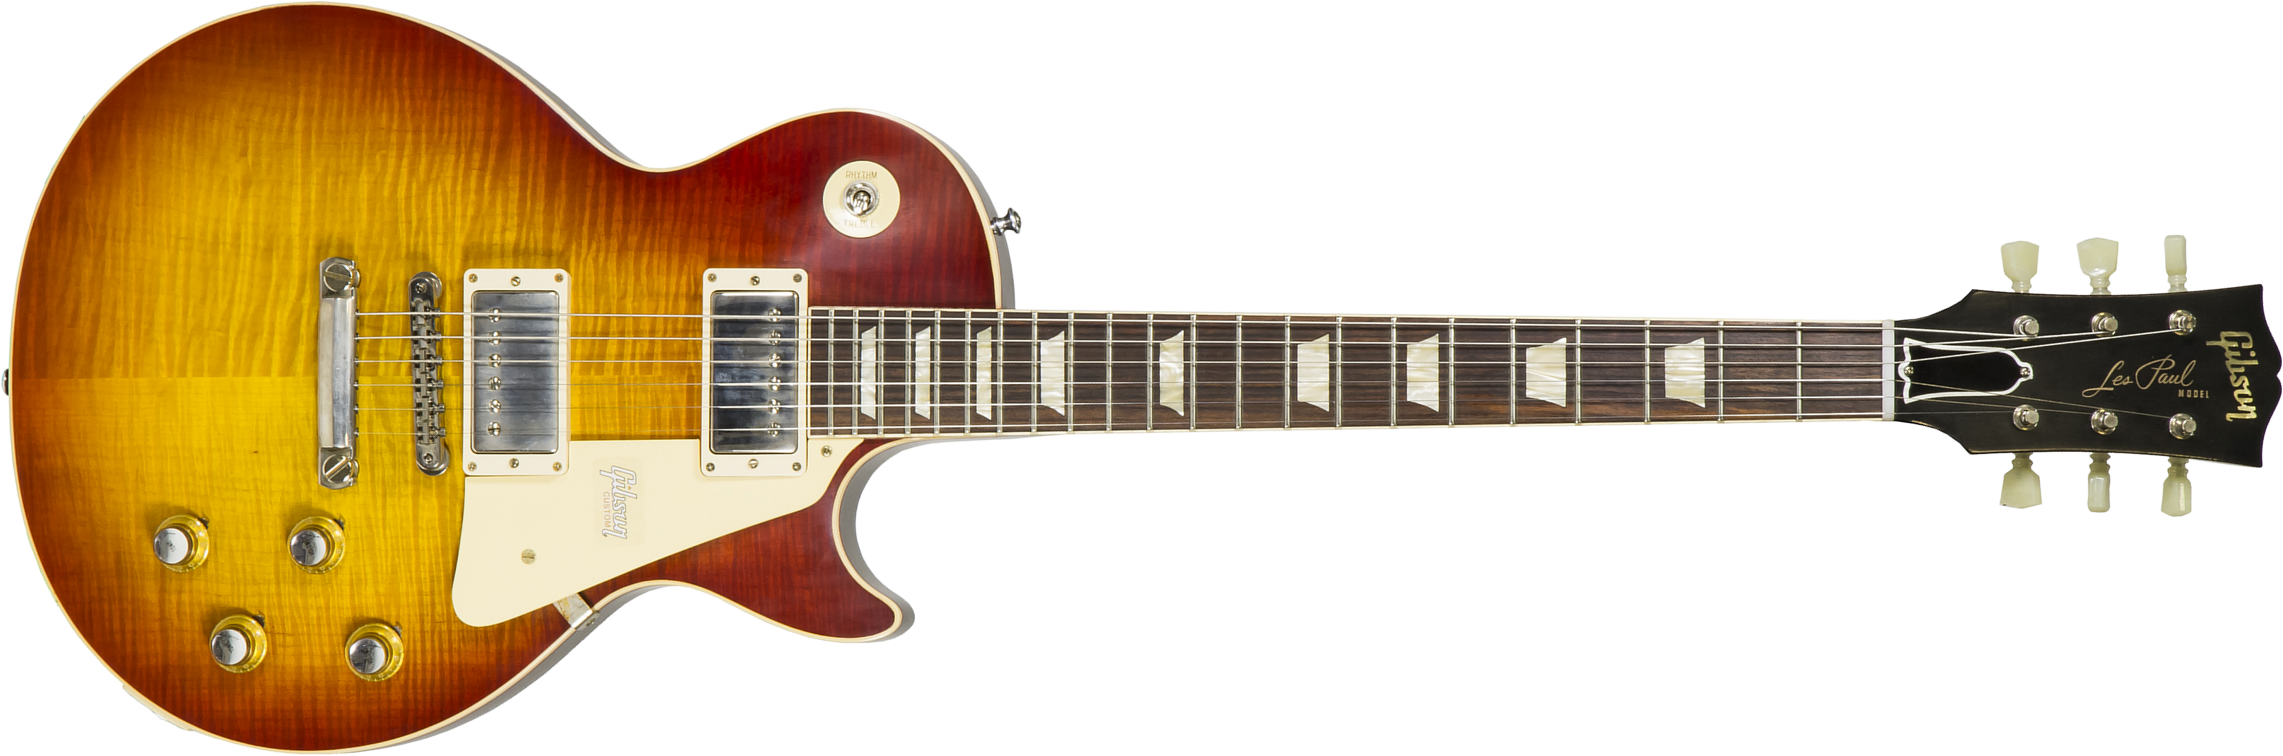 Gibson Custom Shop Les Paul Standard 1960 V2 60th Anniversary 2h Ht Rw - Vos Tomato Soup Burst - Guitarra eléctrica de corte único. - Main picture